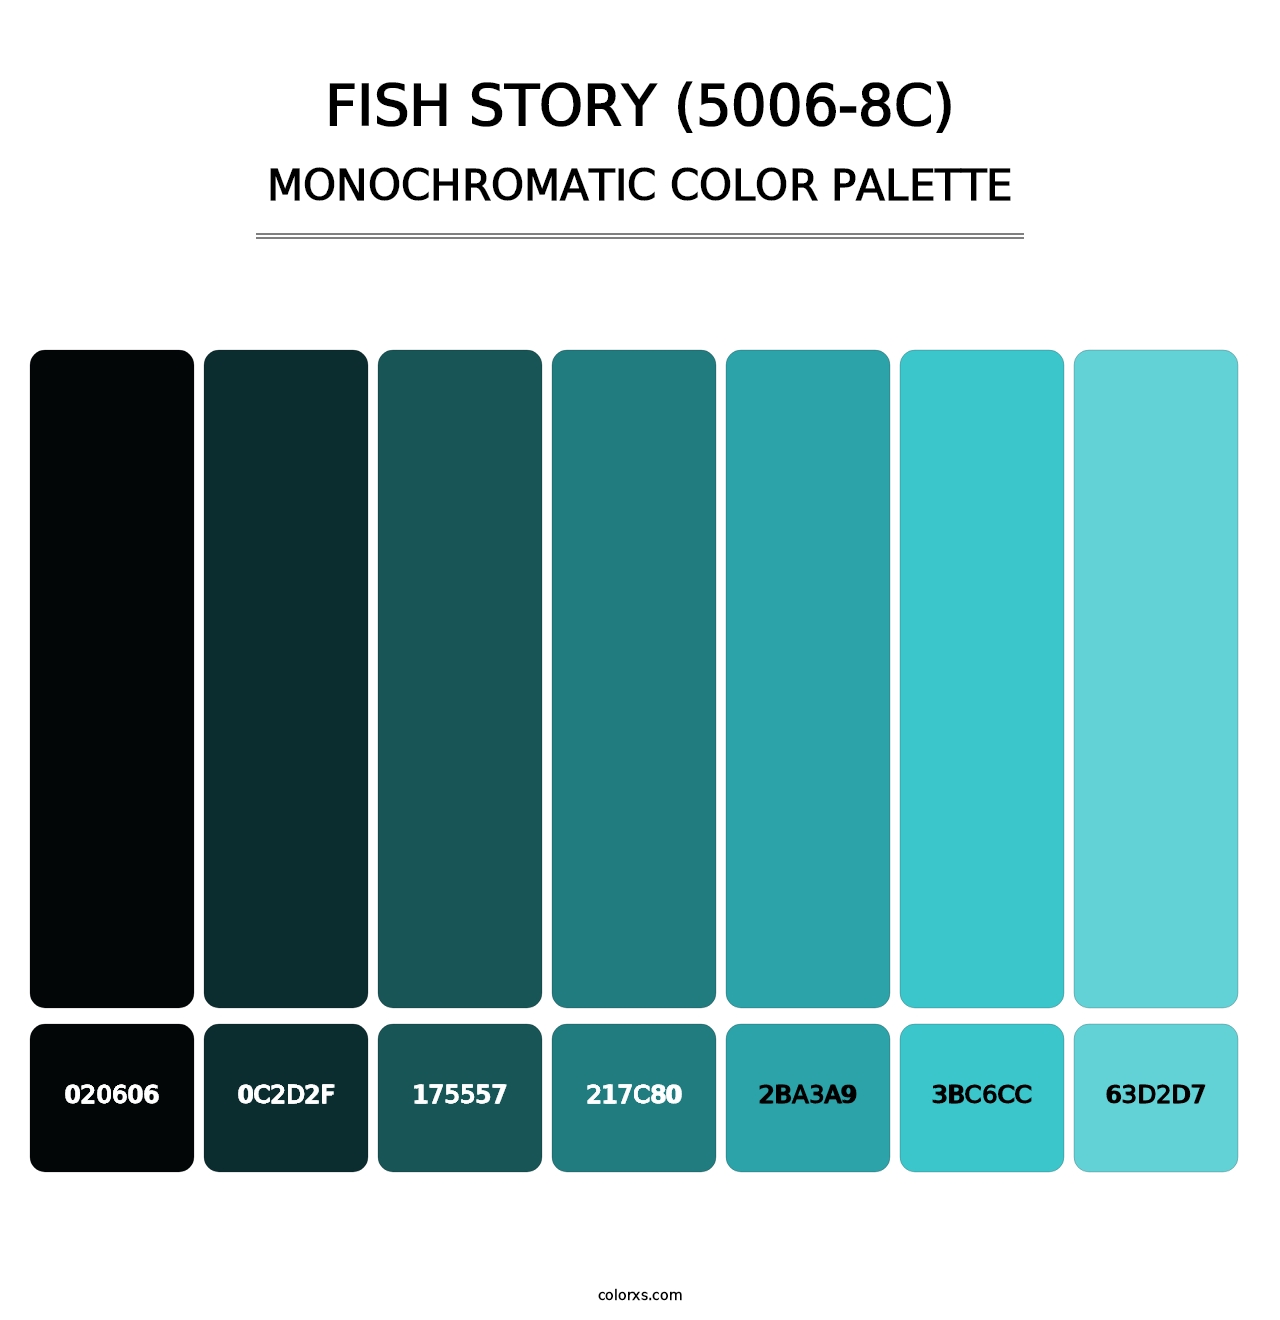 Fish Story (5006-8C) - Monochromatic Color Palette